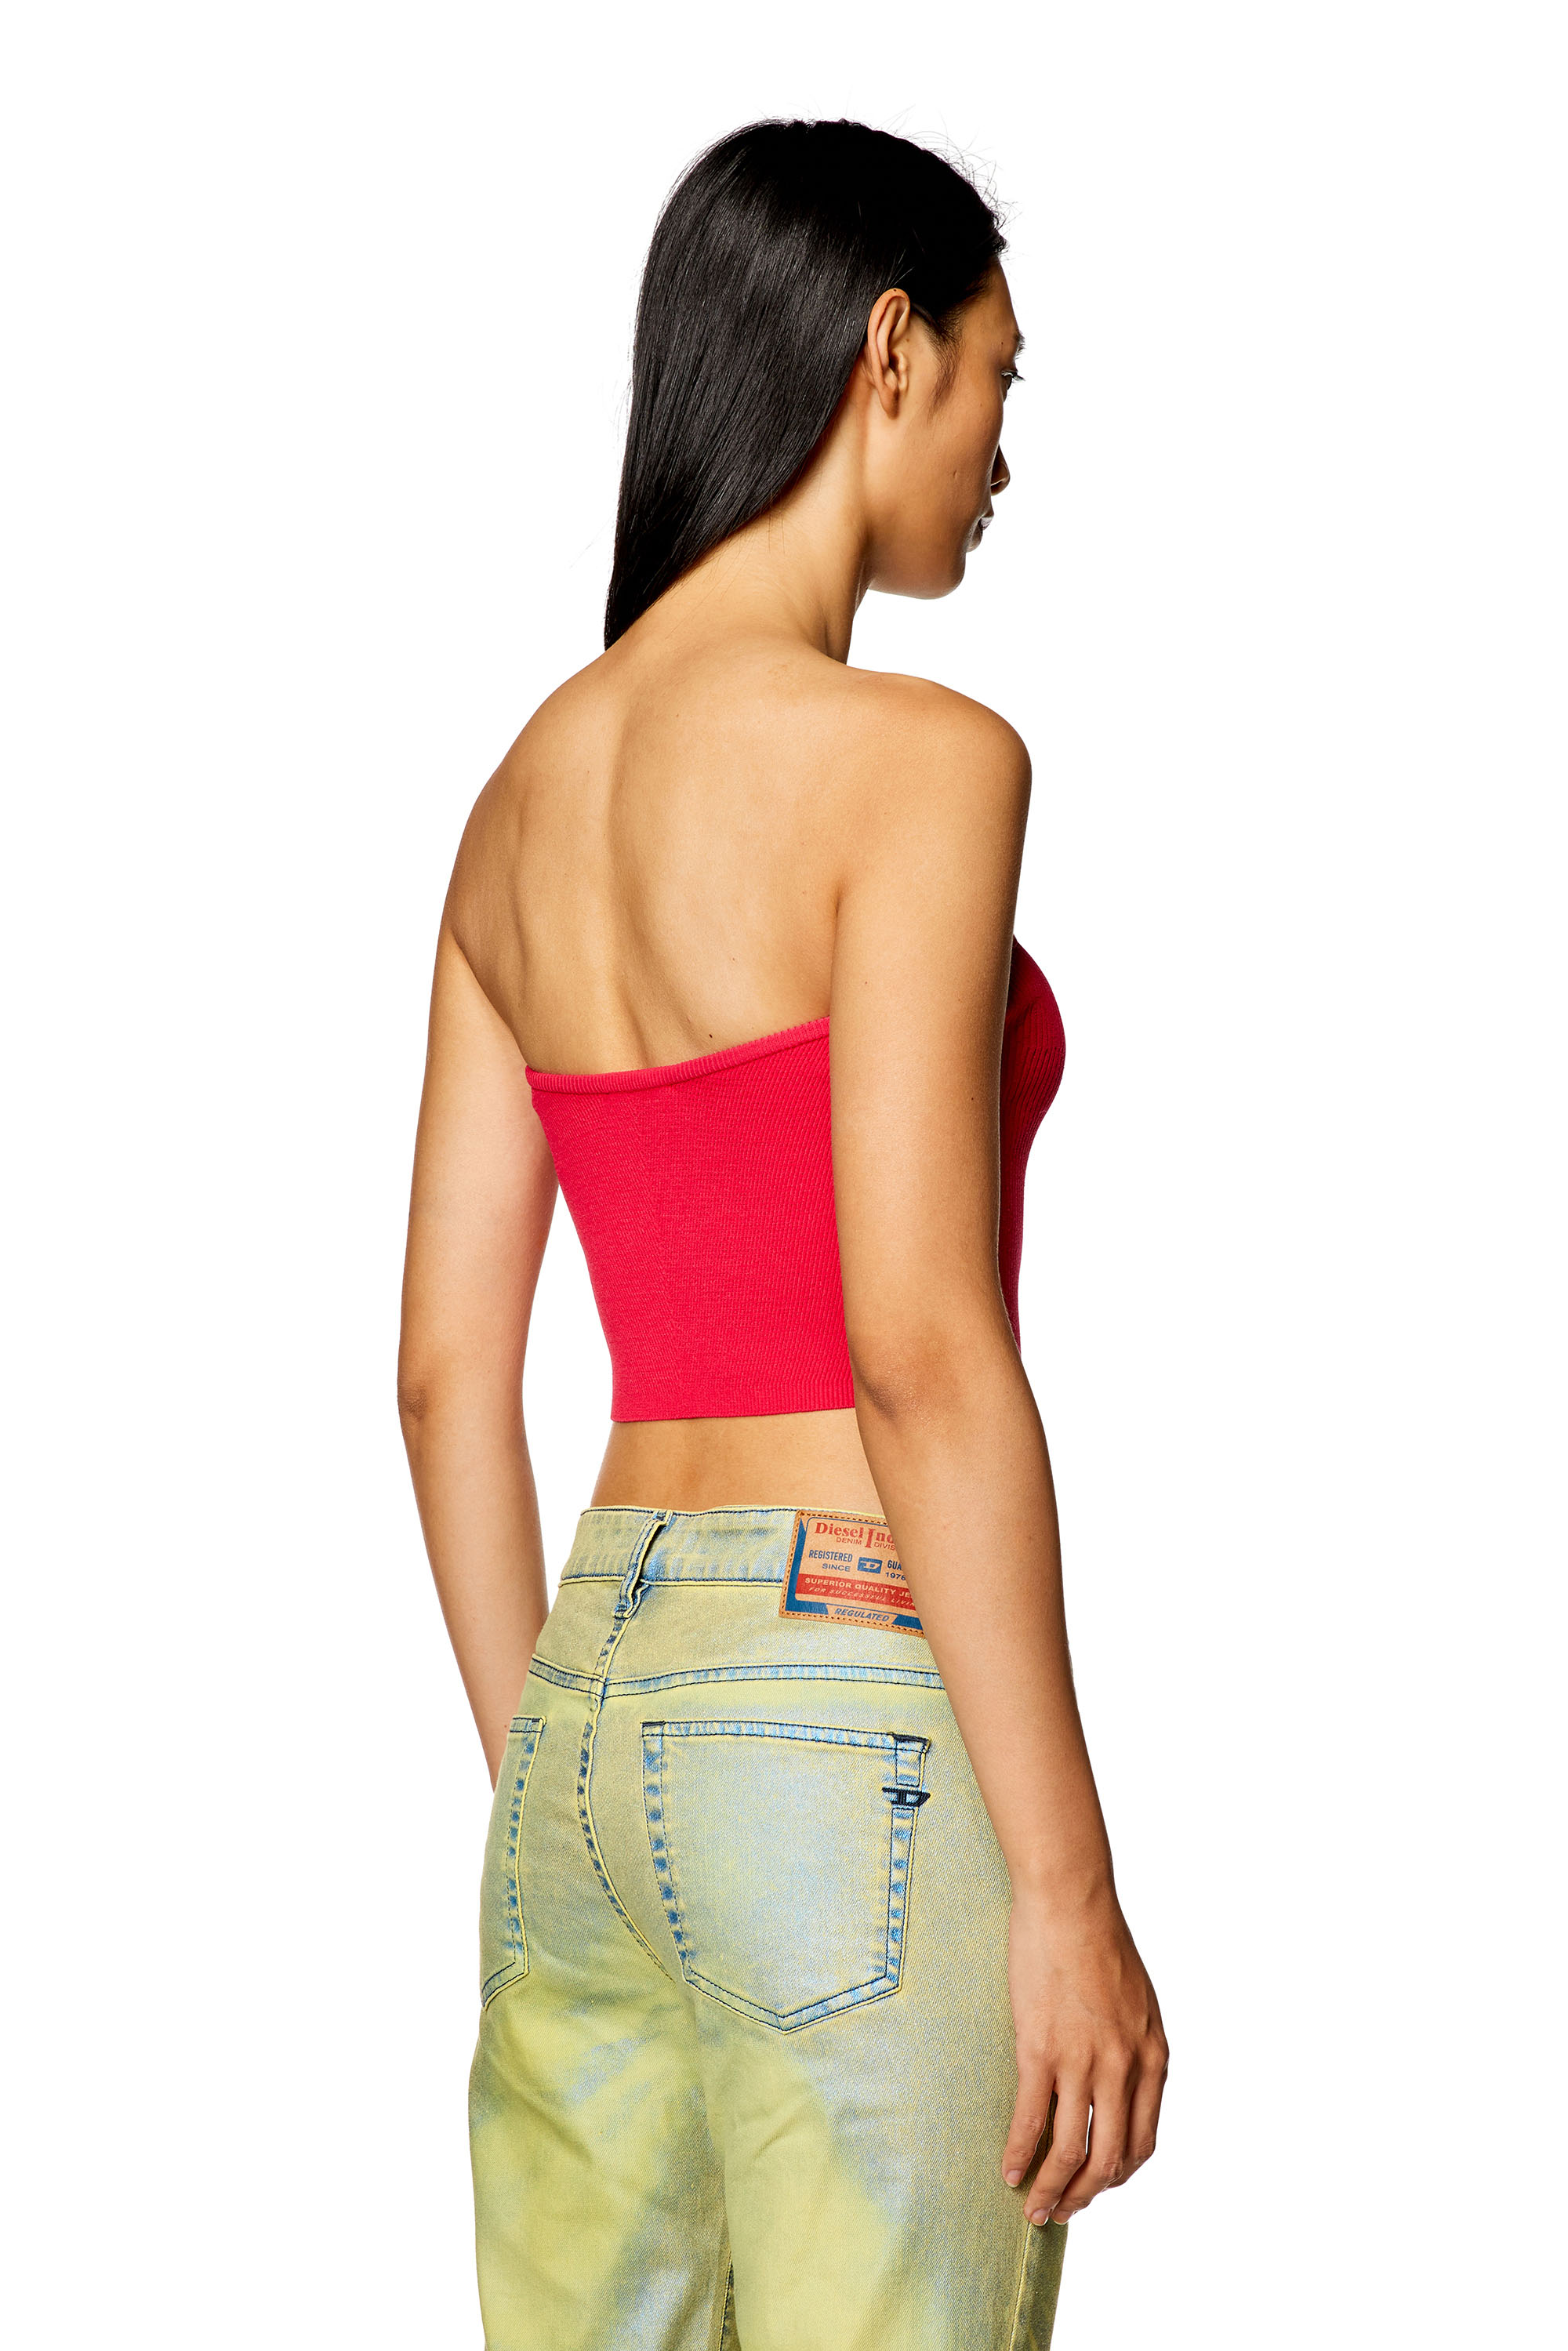 Women Neon Binding Detailed Denim Zip up Bra Top and Pants Set